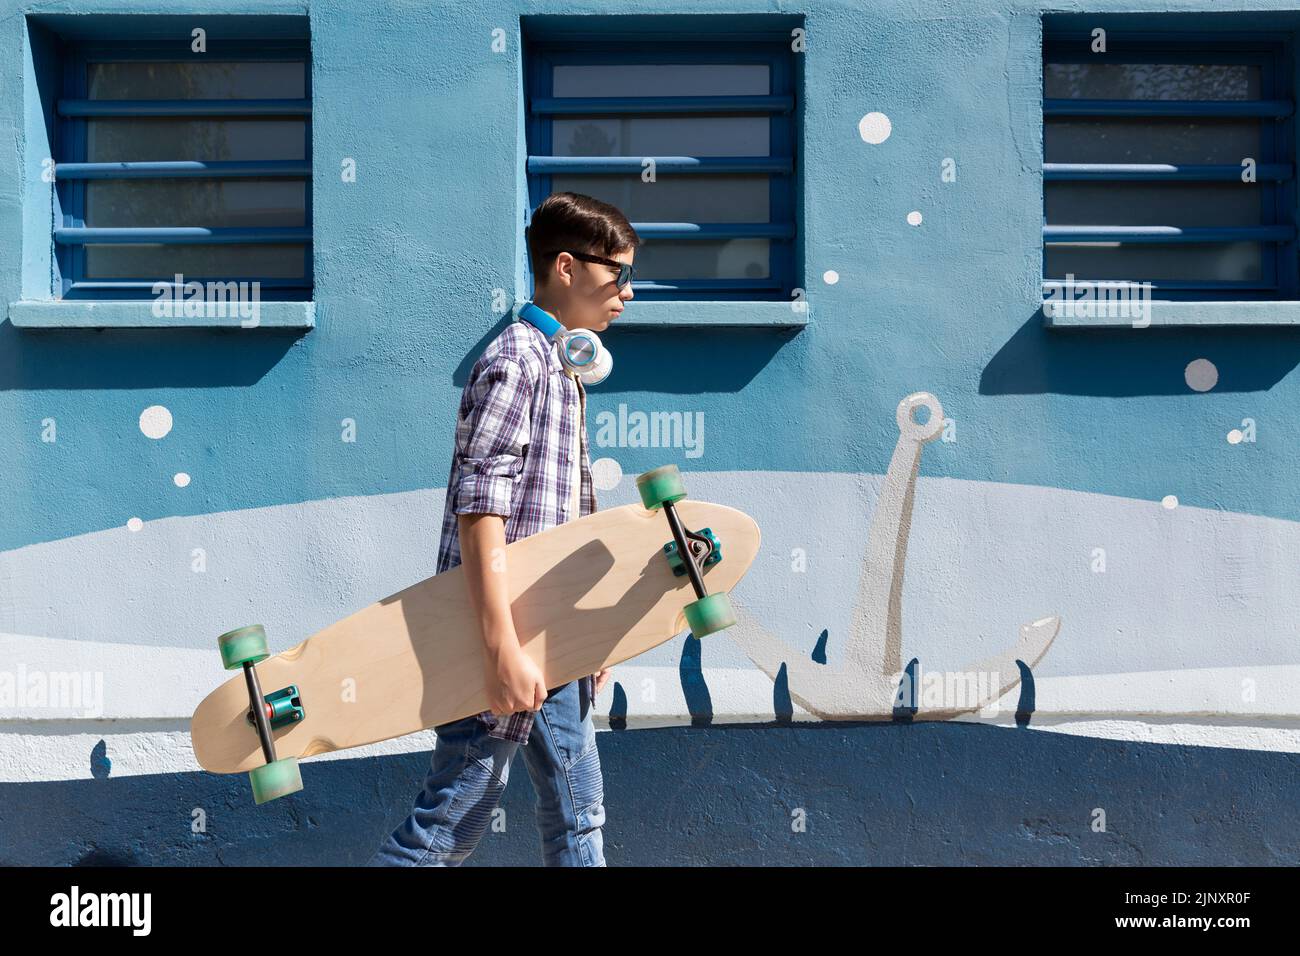 Un adolescent du Caucase marchant avec son skateboard à côté d'un mur bleu. Banque D'Images